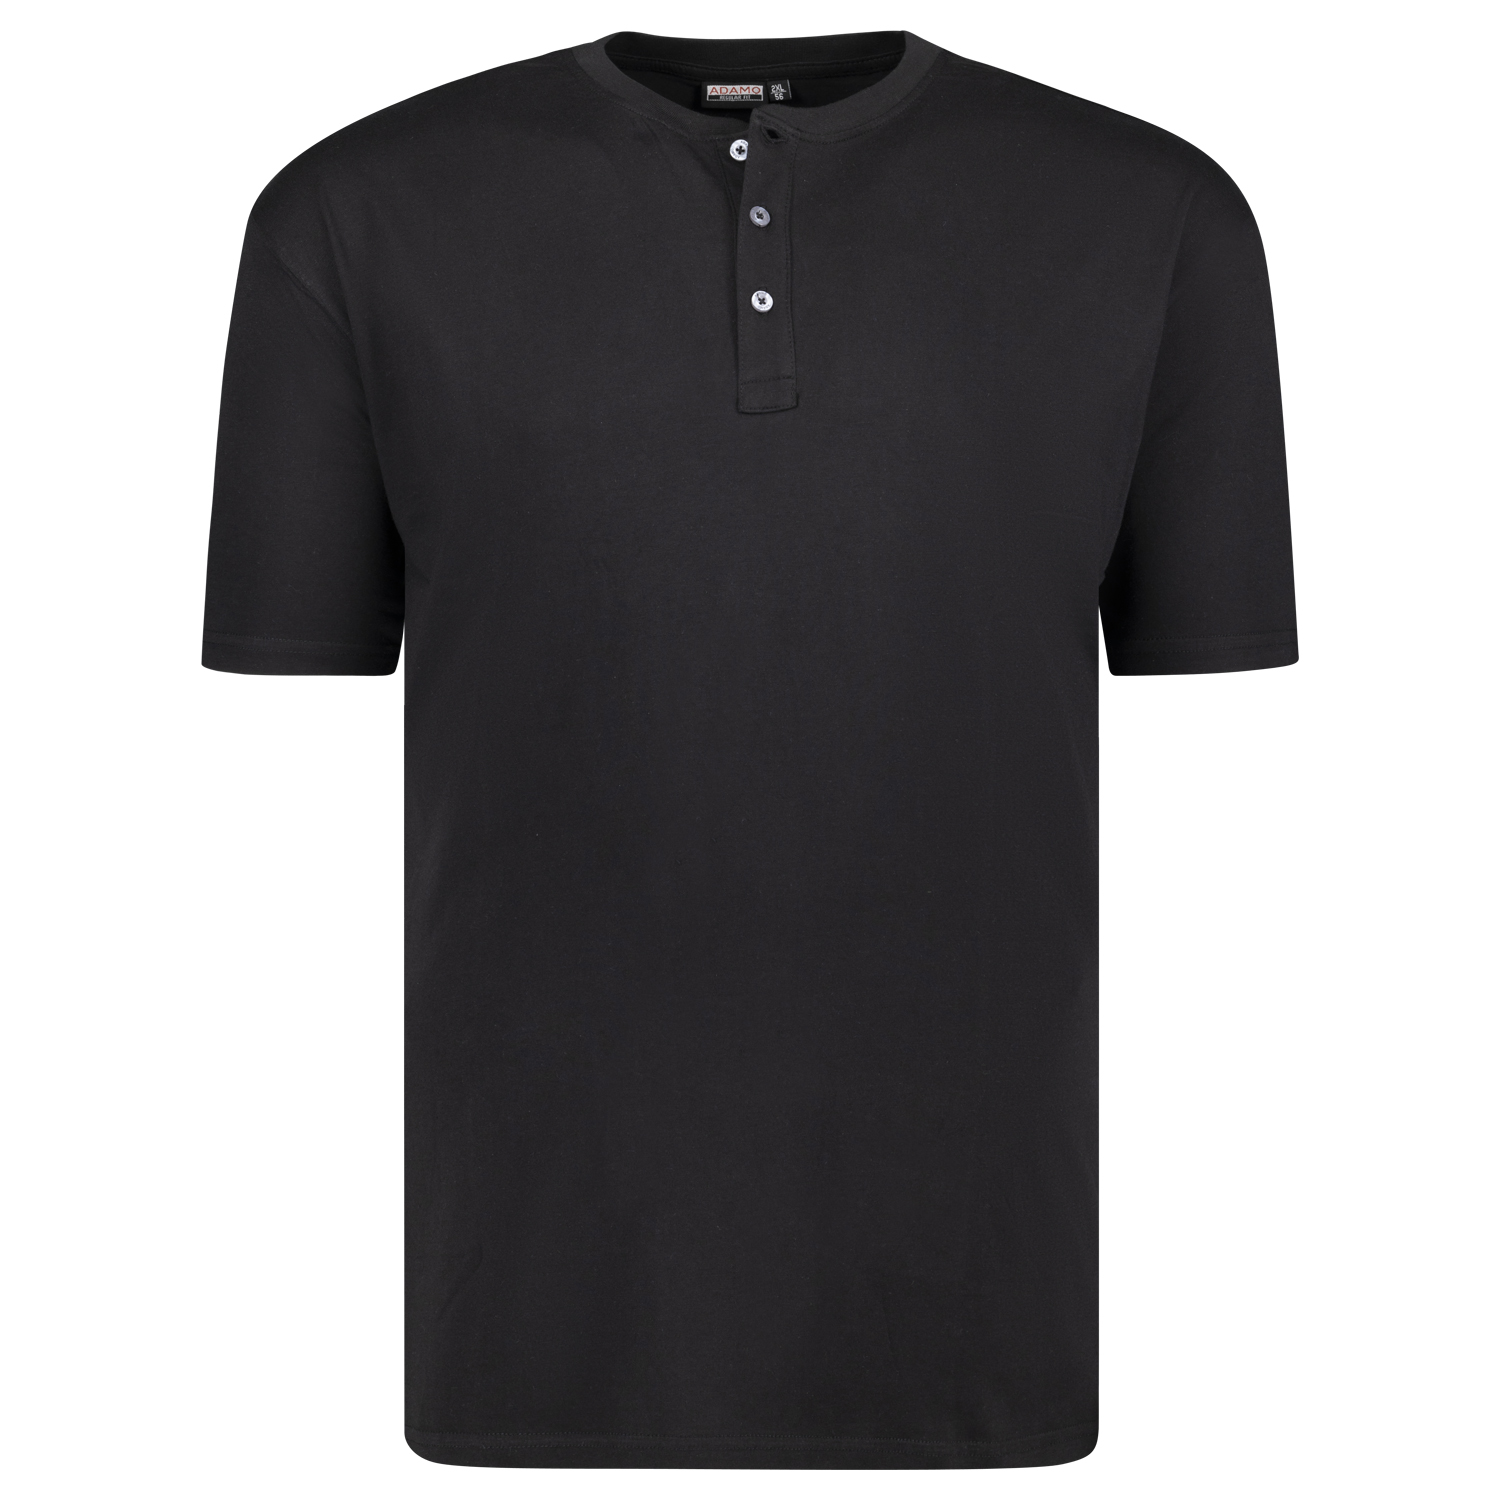 Herren T-Shirt mit Knopfleiste REGULAR FIT von Adamo schwarz Serie Silas in Übergrößen bis 10XL